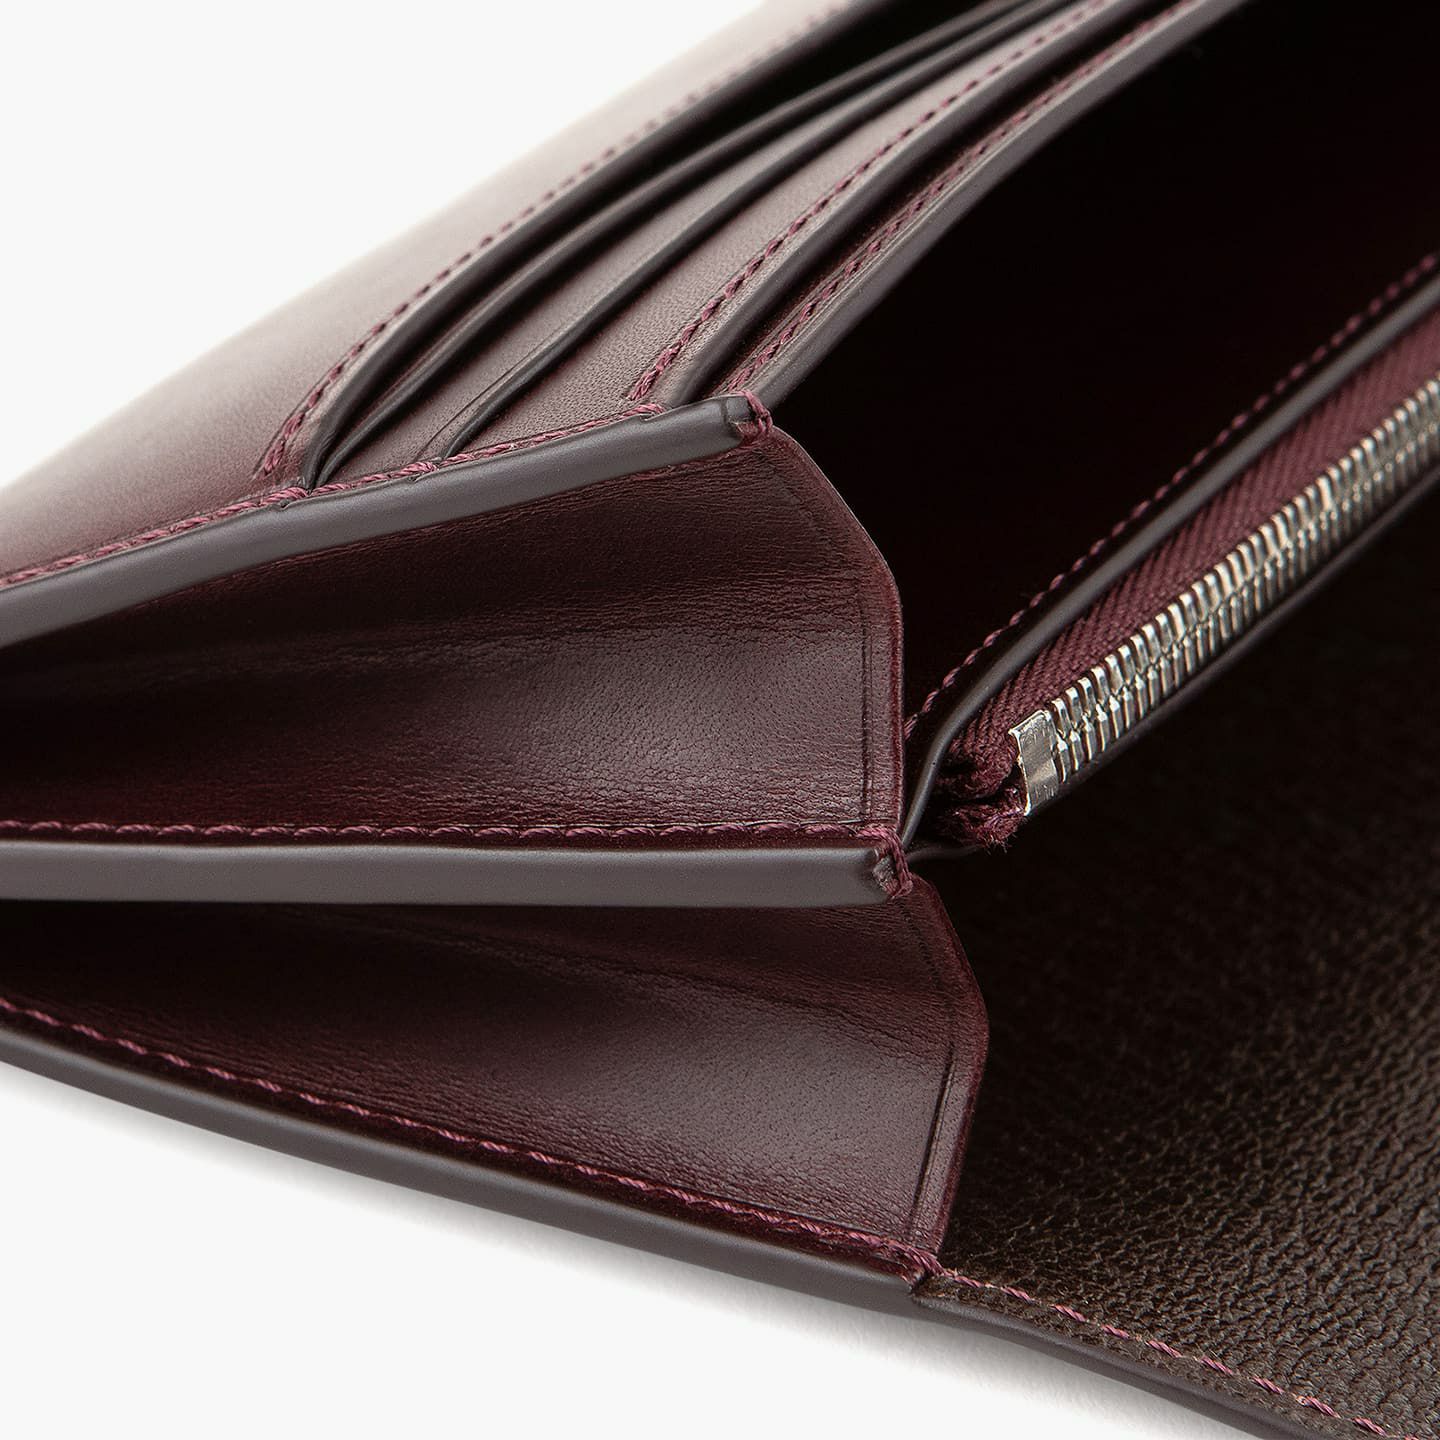 ブッテーロ 長財布 | 大人のバッグ・財布・ 長財布 など拘りの日本製